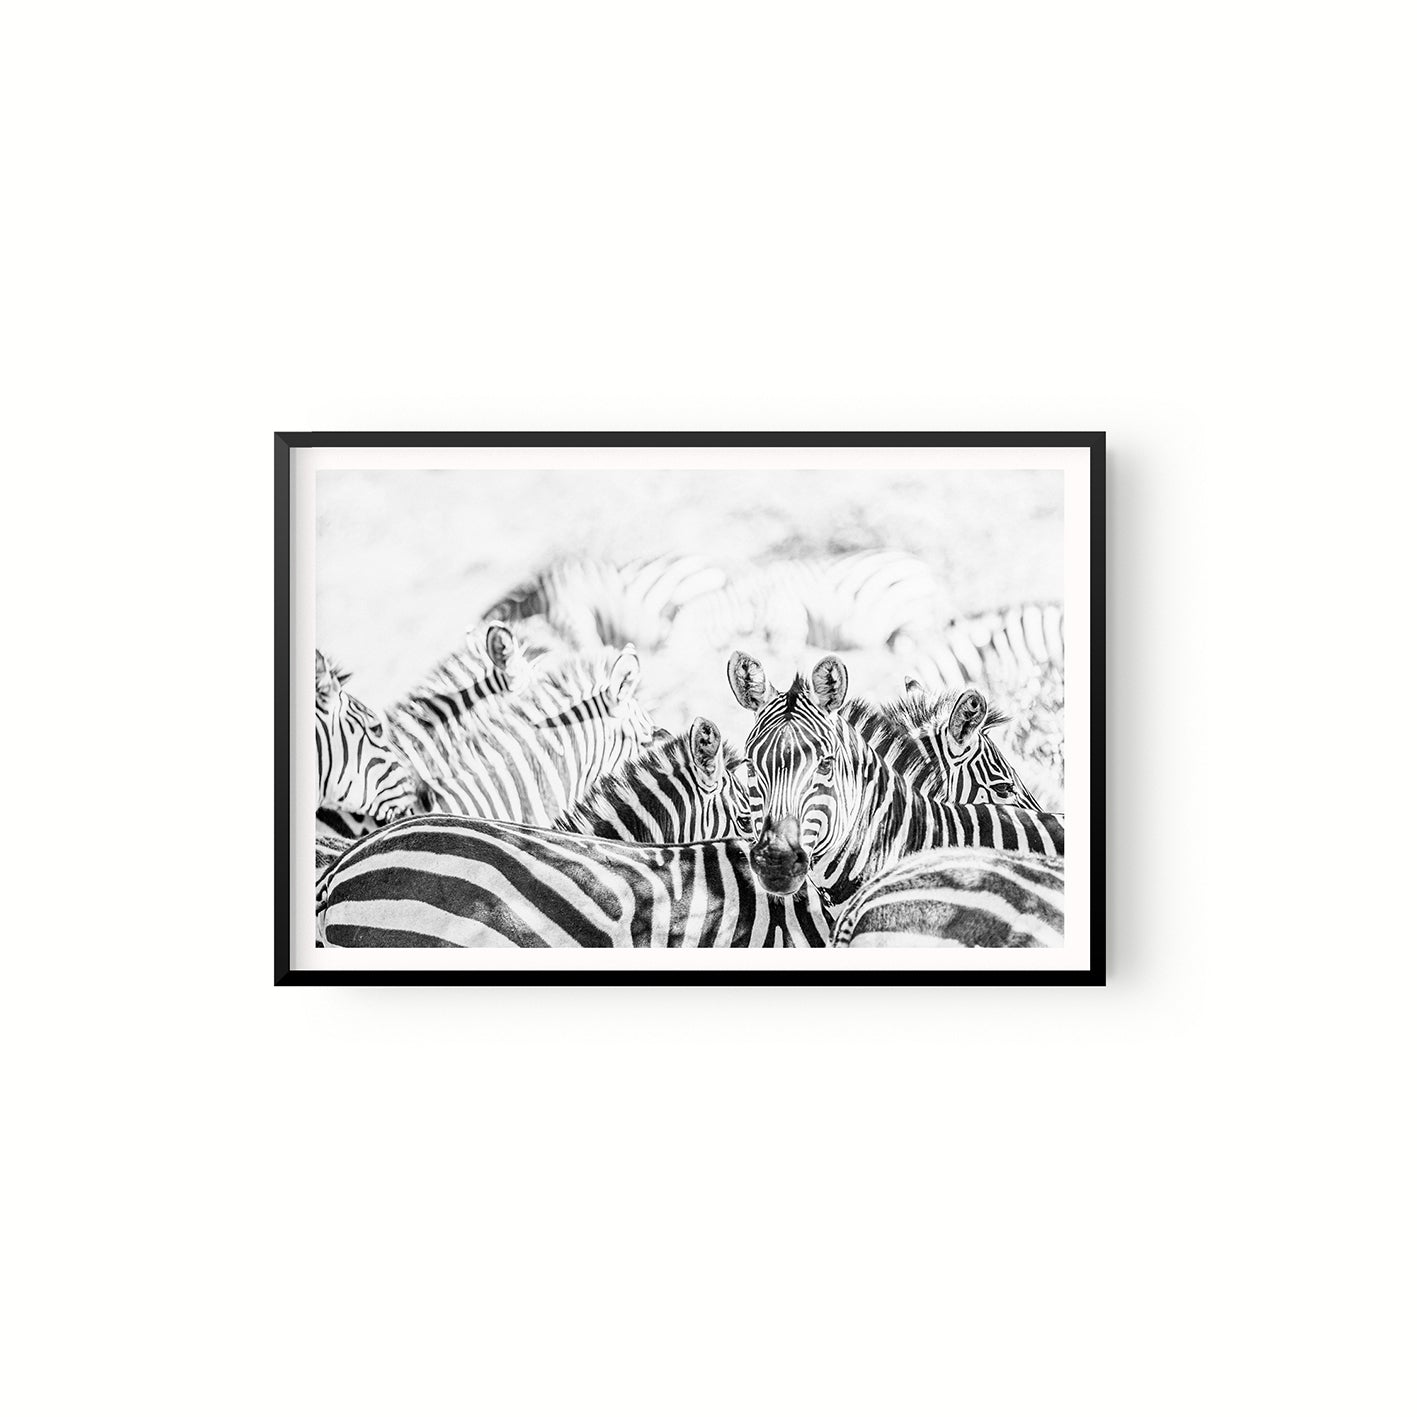 Manada Zebras